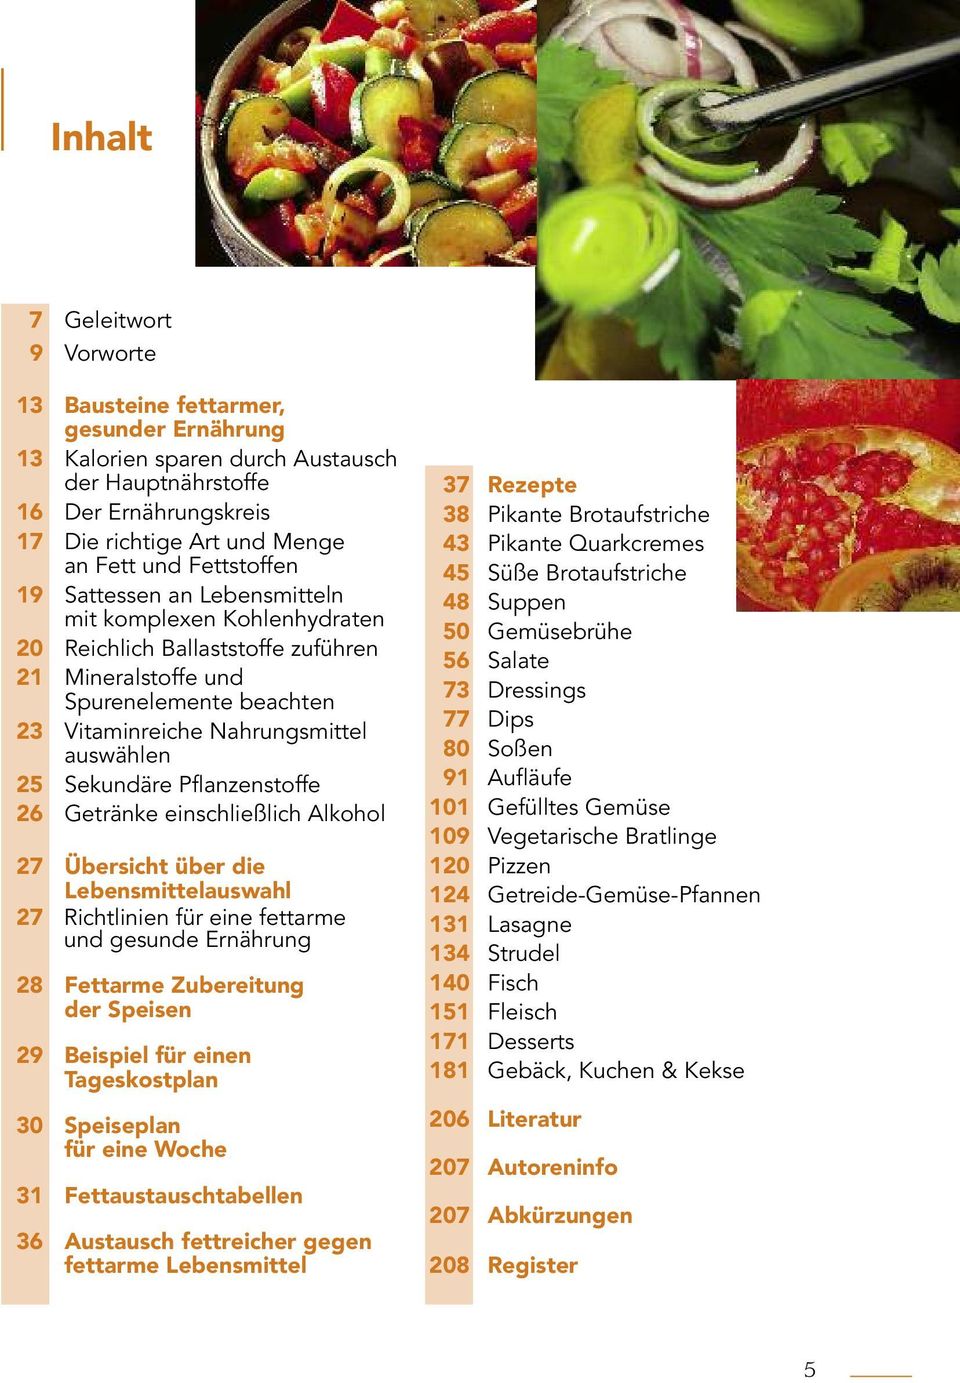 Sekundäre Pflanzenstoffe 26 Getränke einschließlich Alkohol 27 Übersicht über die Lebensmittelauswahl 27 Richtlinien für eine fettarme und gesunde Ernährung 28 Fettarme Zubereitung der Speisen 29